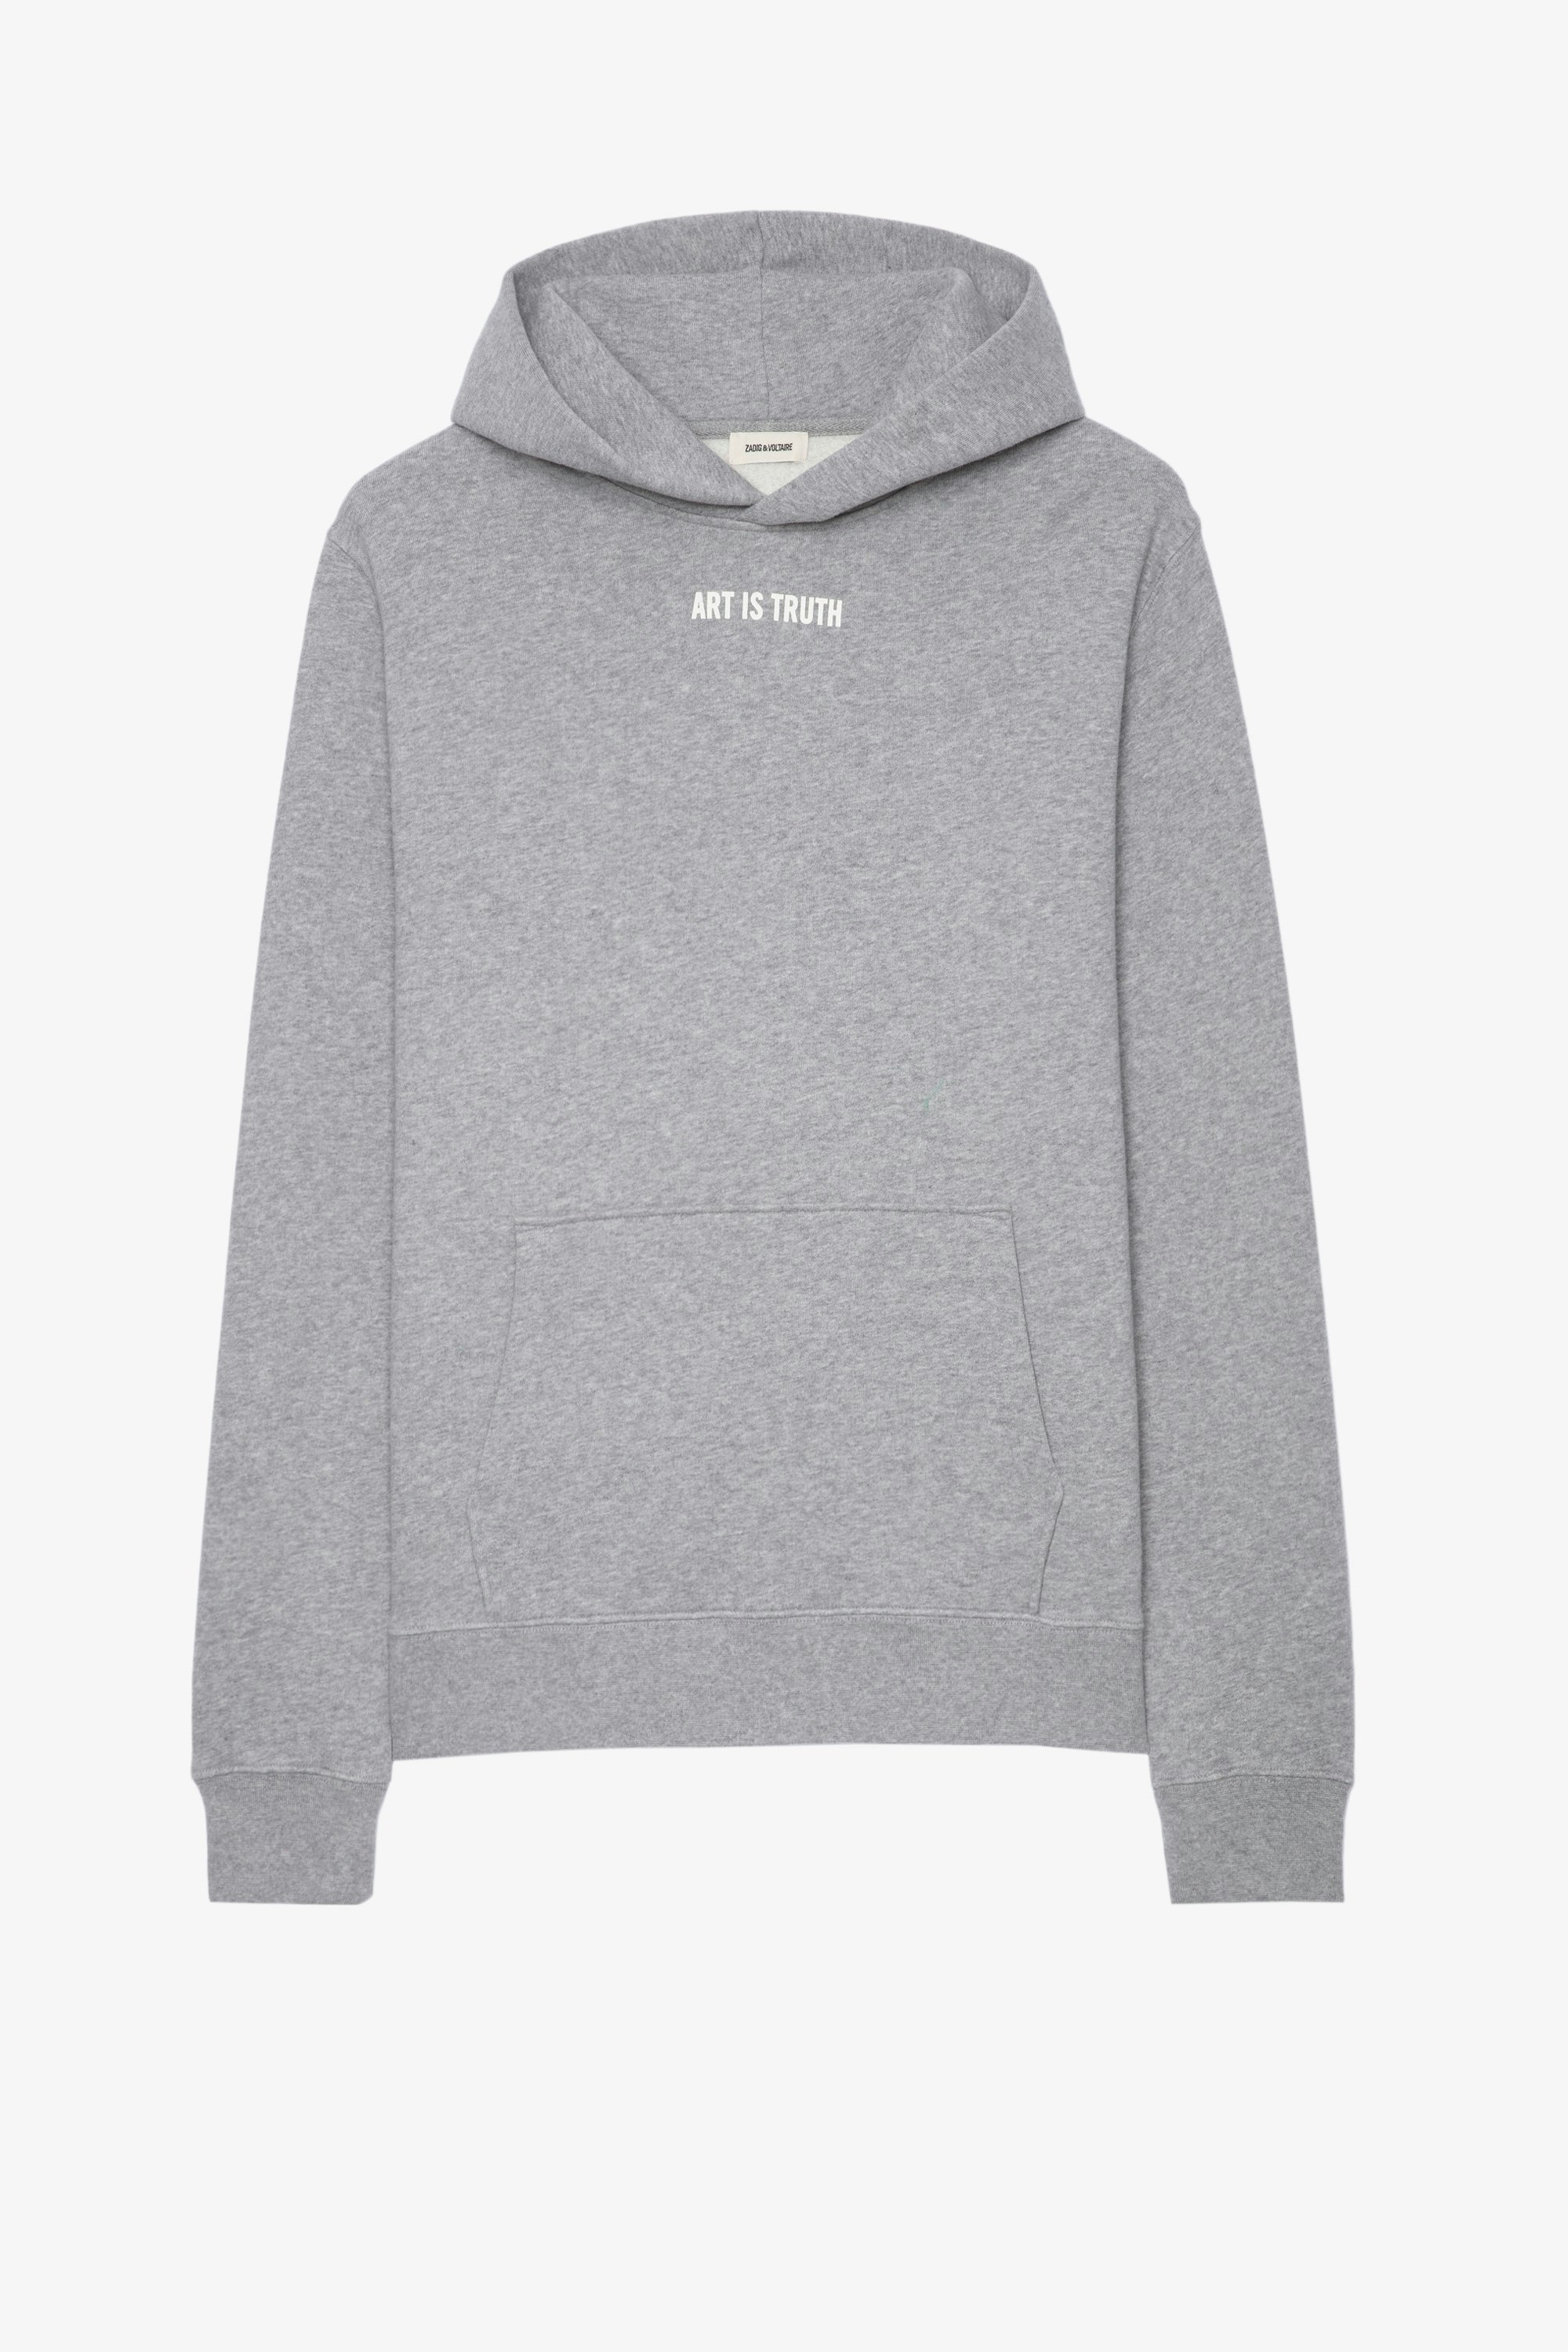 Sanchi Sweatshirt Men's 'Art is Truth' grey cotton hoodie